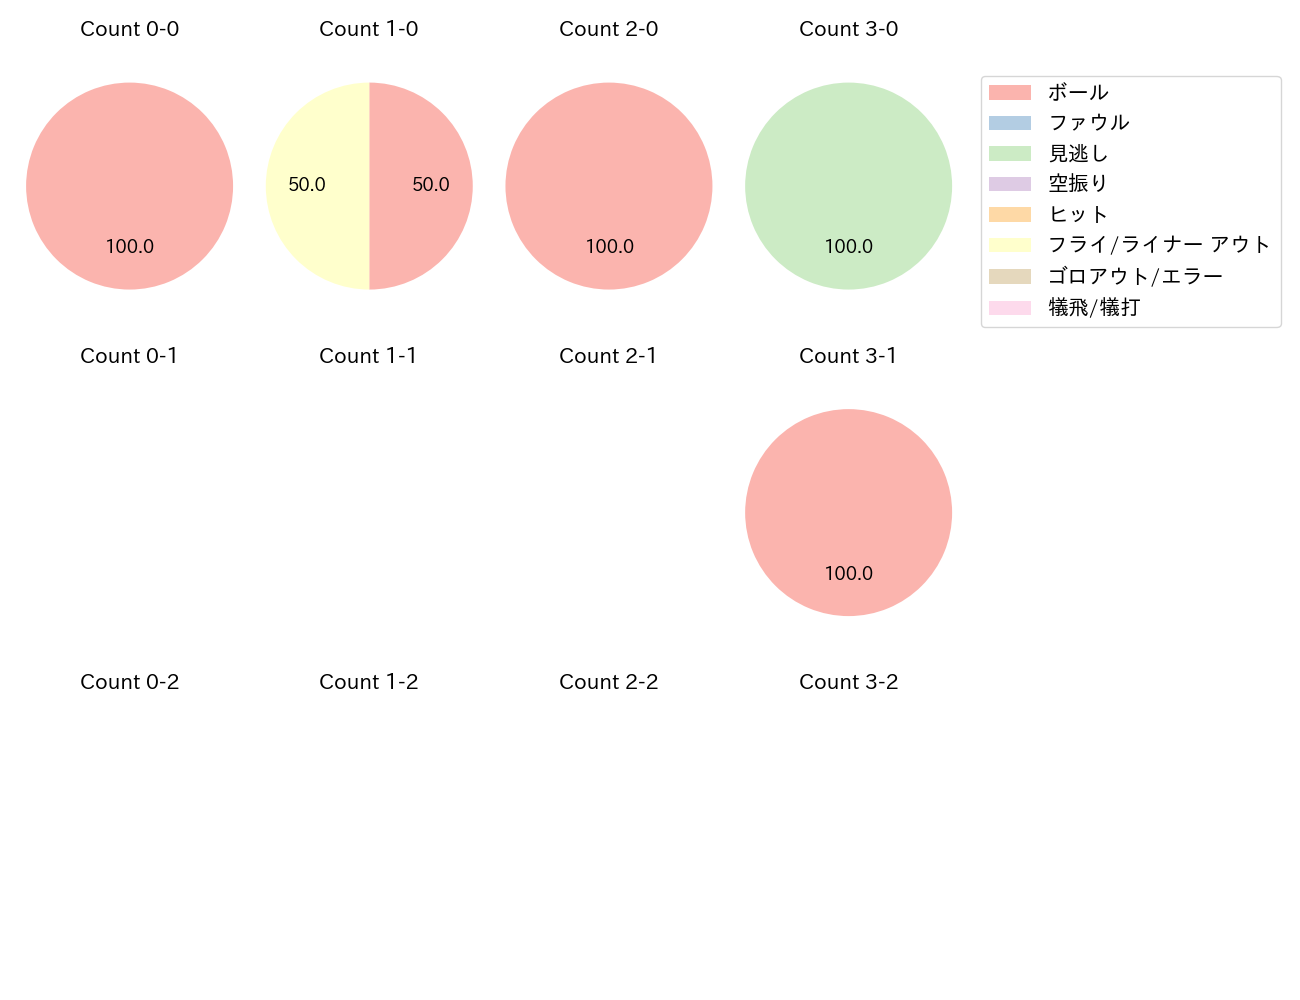 小川 泰弘の球数分布(2021年3月)